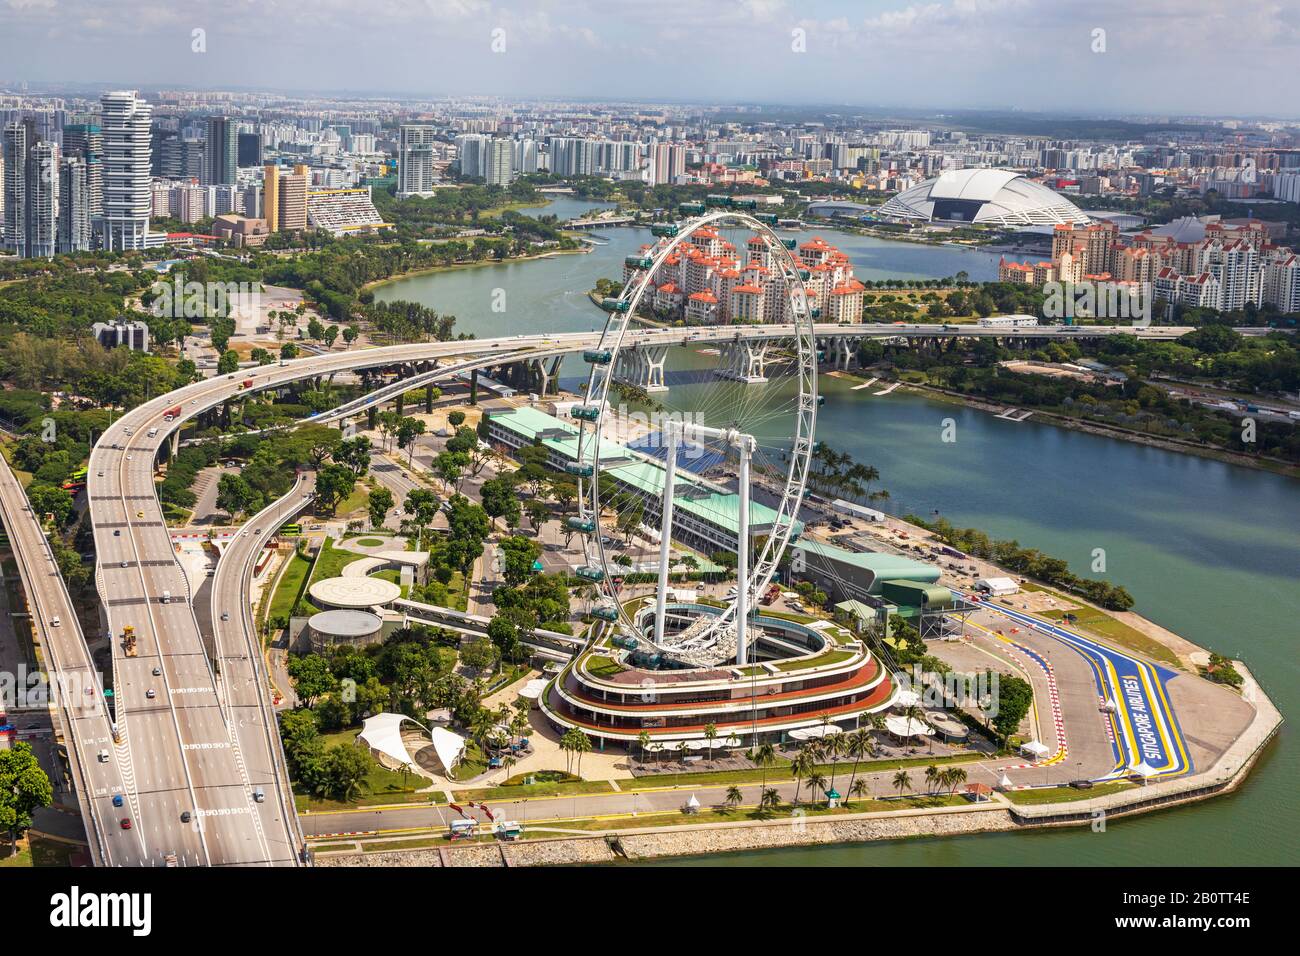 Blick auf die Skyline von Singapur mit dem Riesenrad des Singapore Flyer und der Rennbahn zum Singapore Grande Prix, Singapur Stockfoto